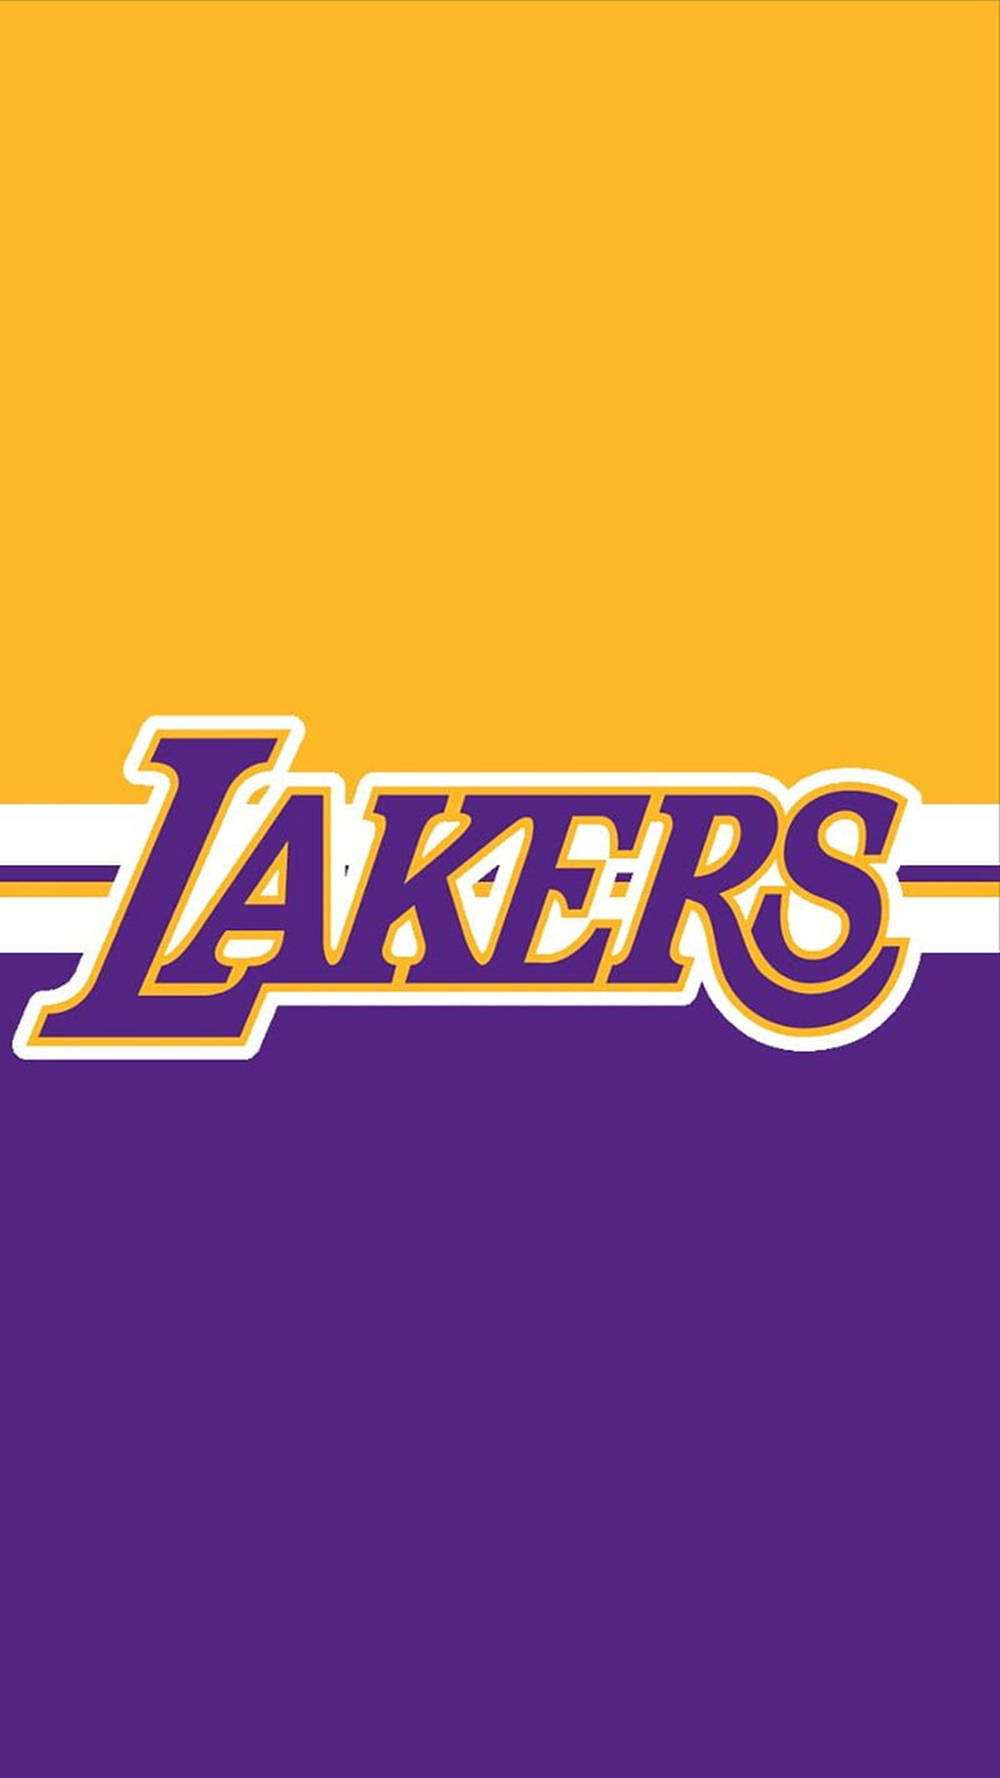 Logotipominimalista De Los Lakers Fondo de pantalla